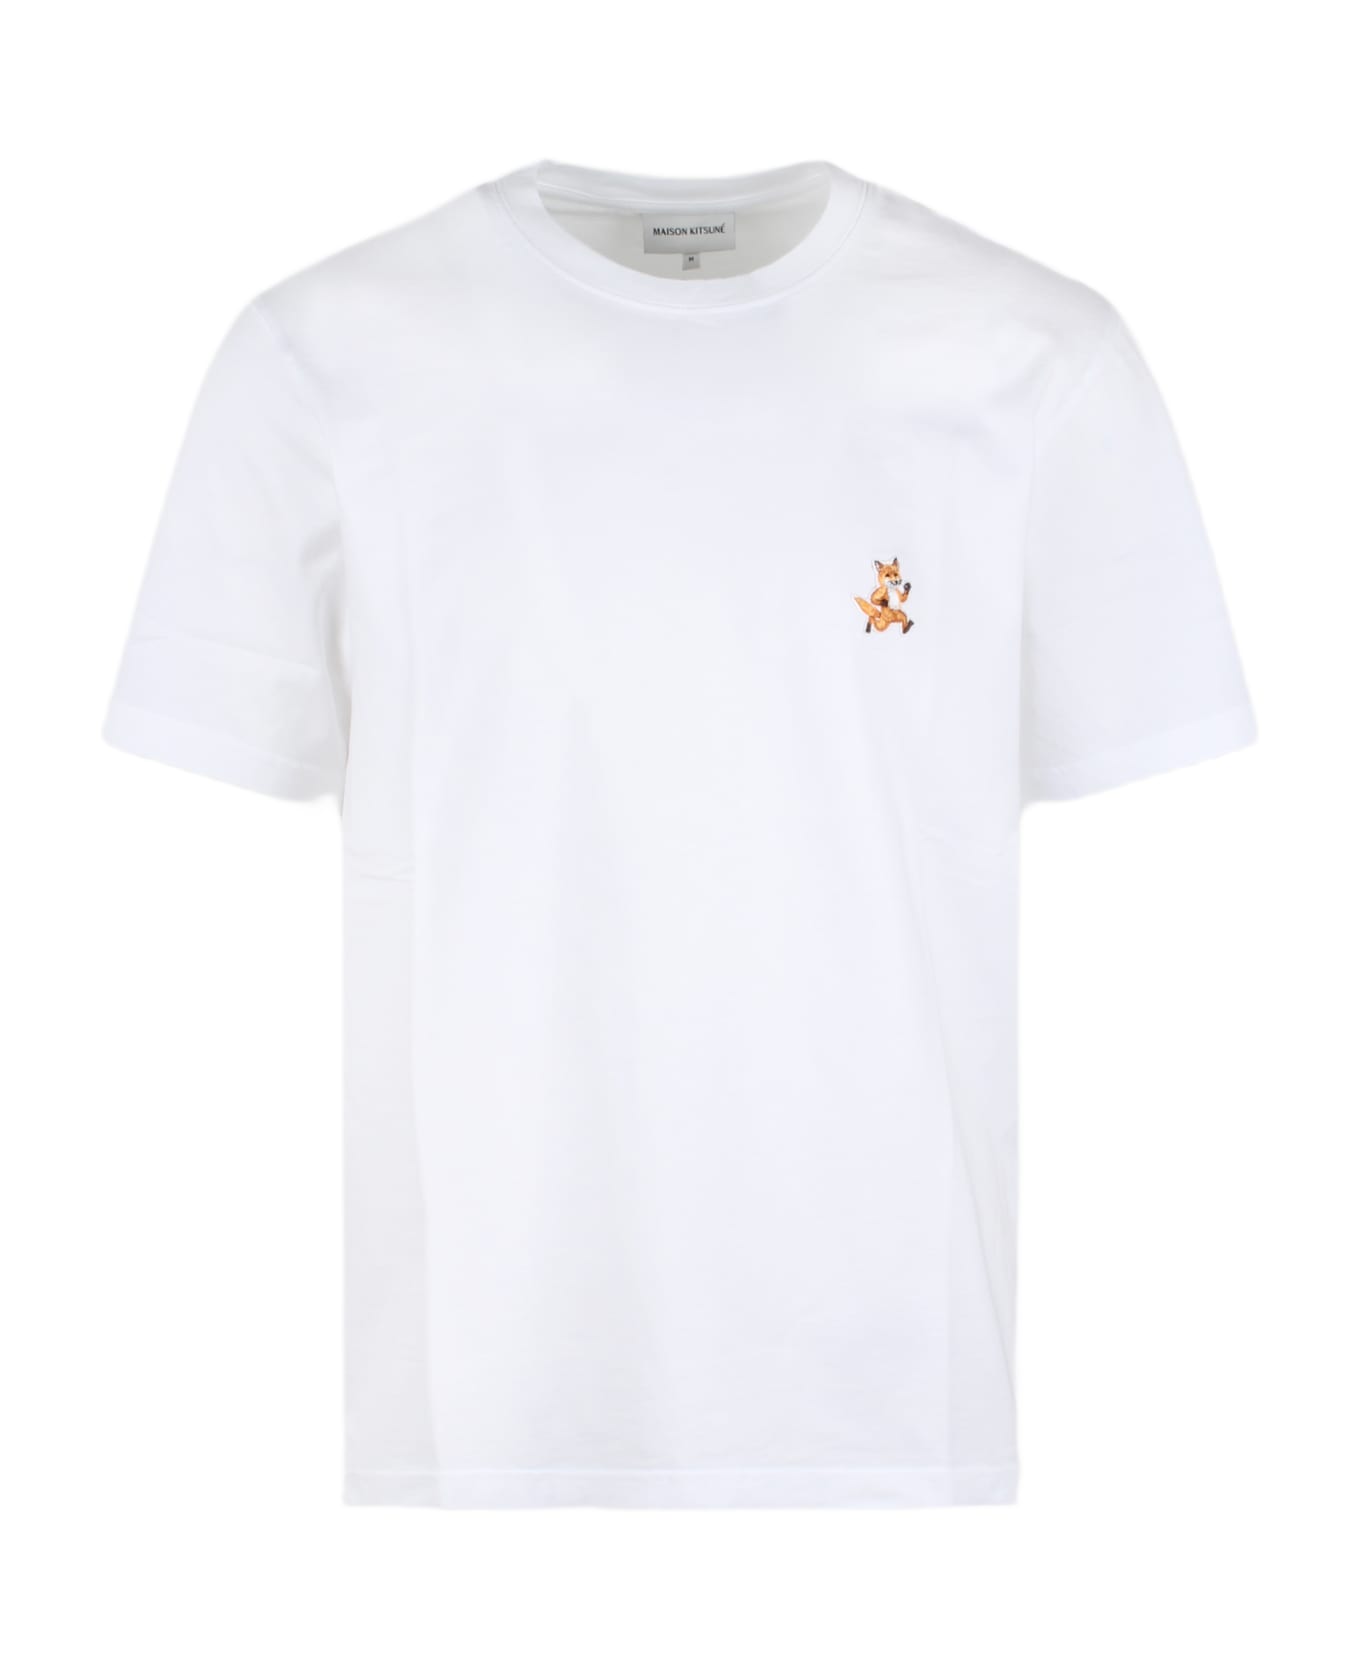 Maison Kitsuné Speedy Fox Patch T-shirt - White シャツ